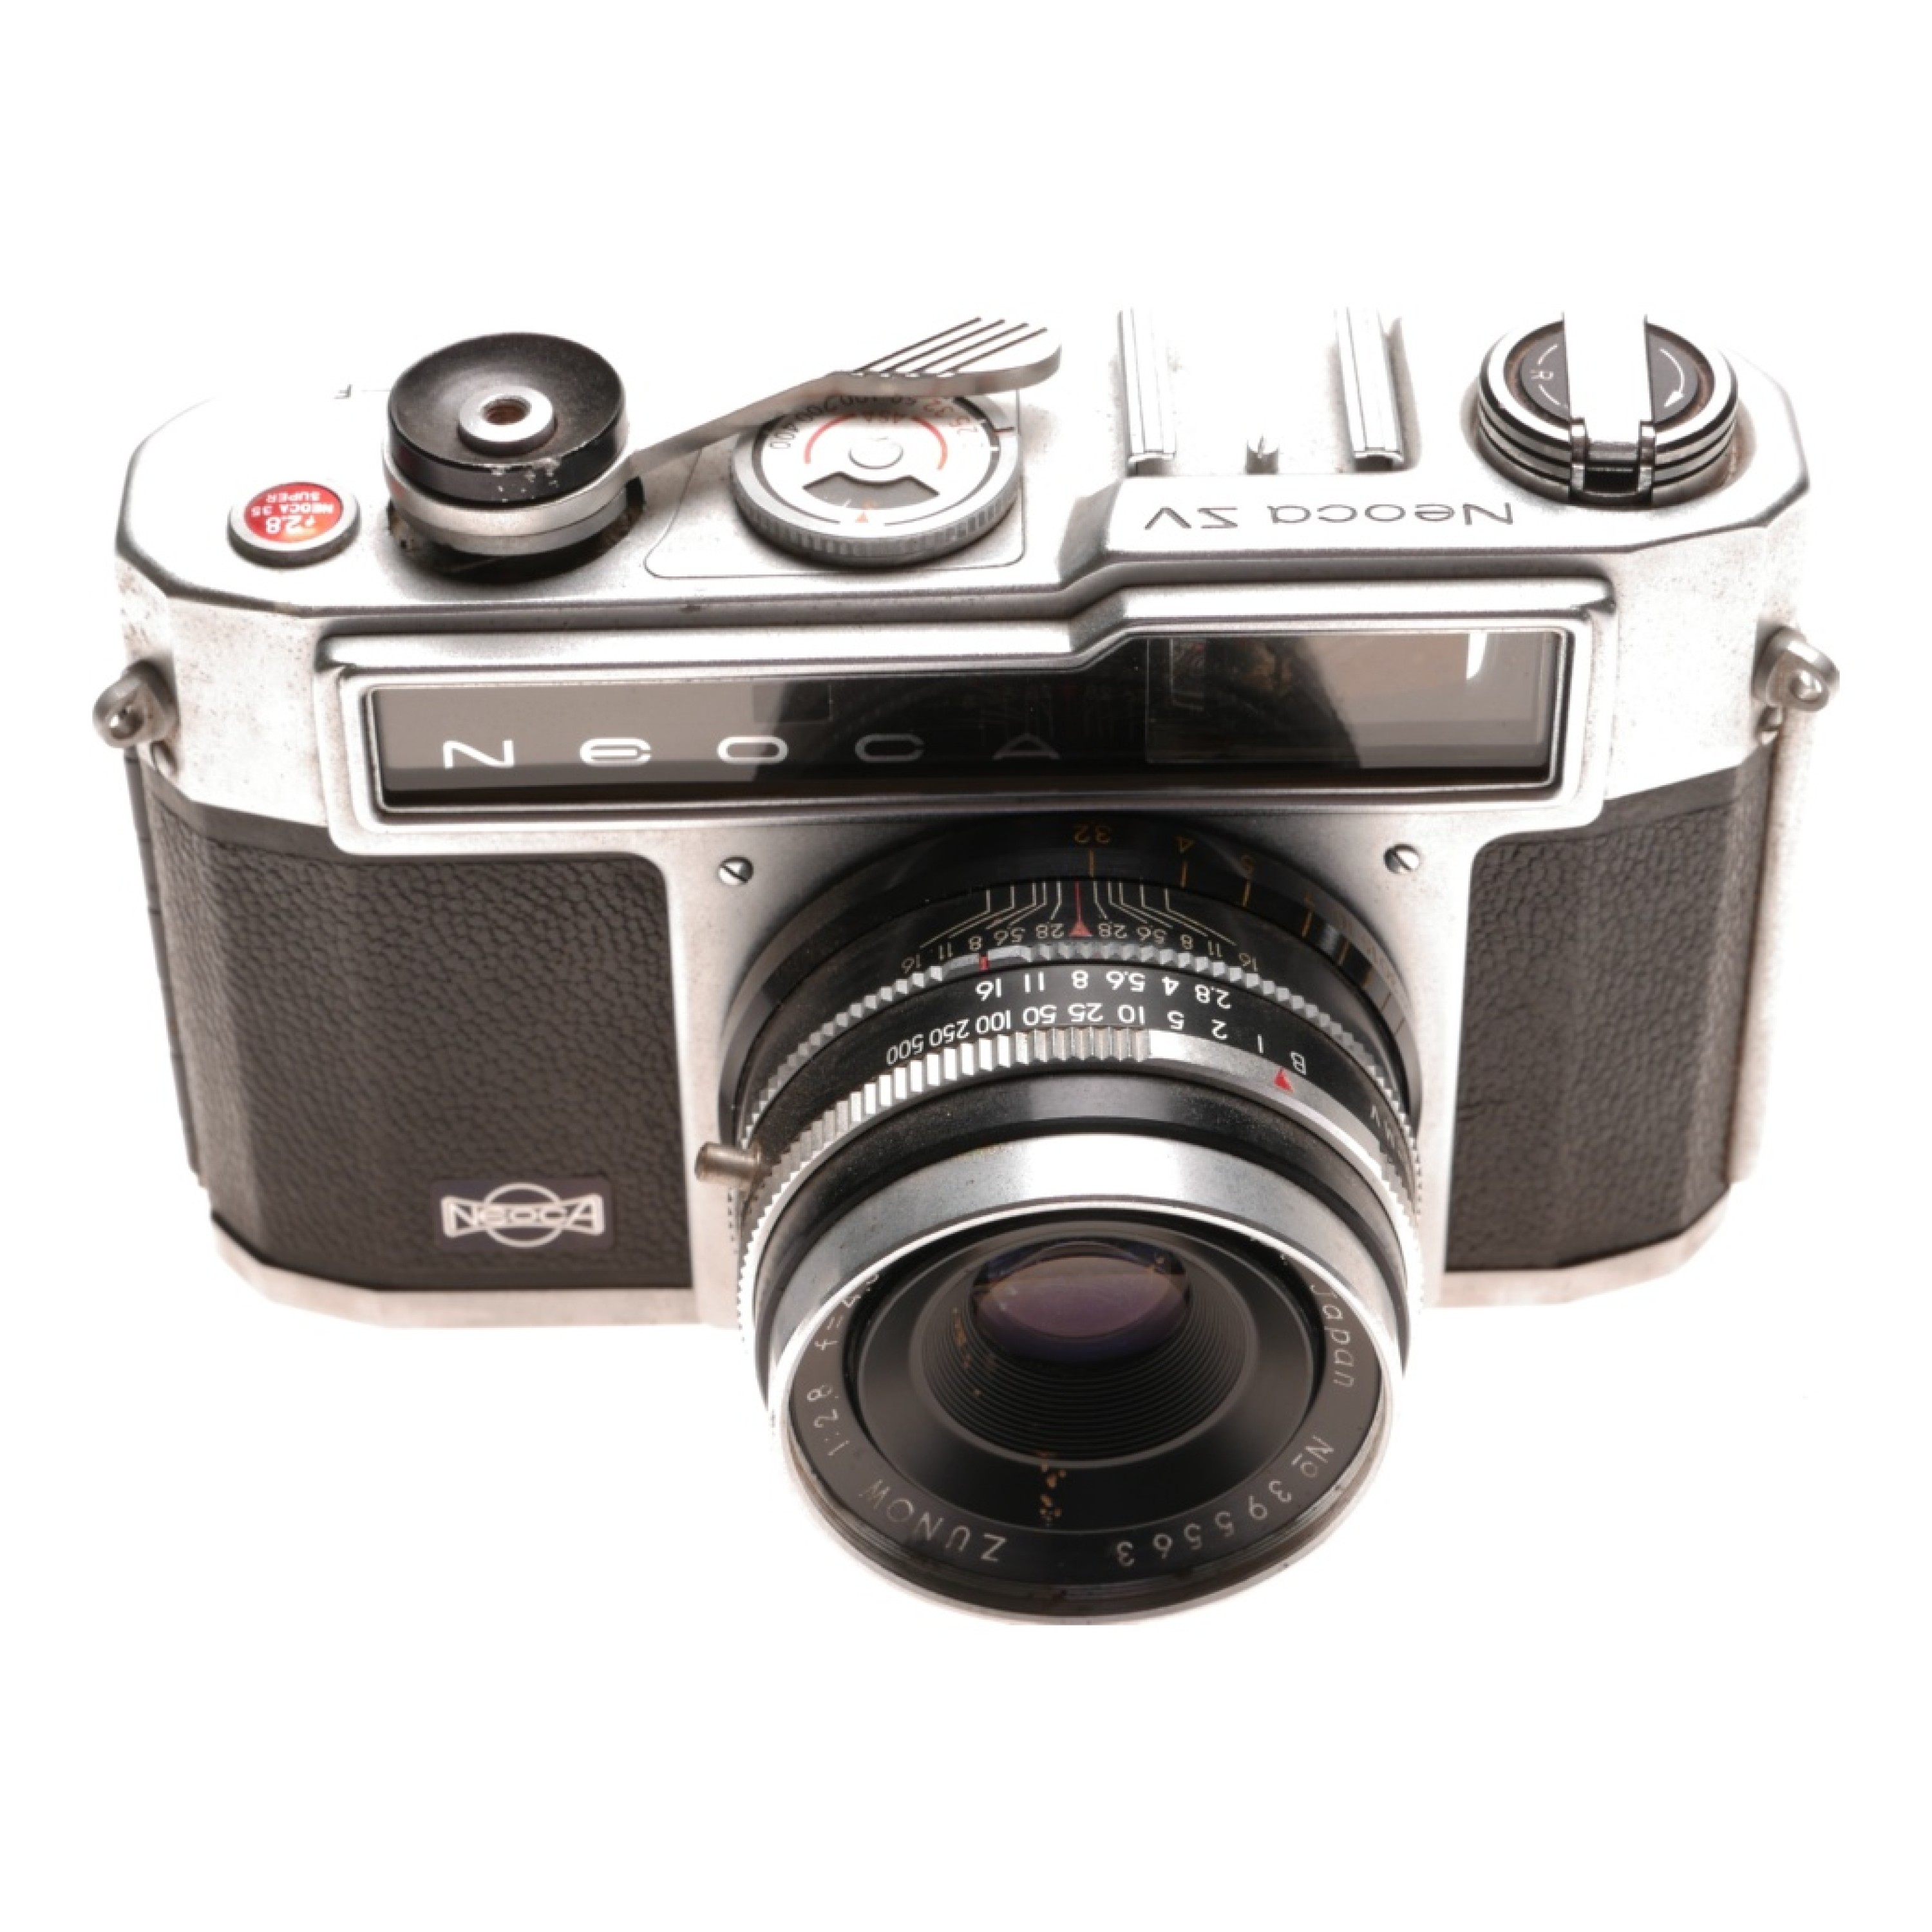 Zunow 1:2.8 f=45mm Neoca camera lens vintage classic rare